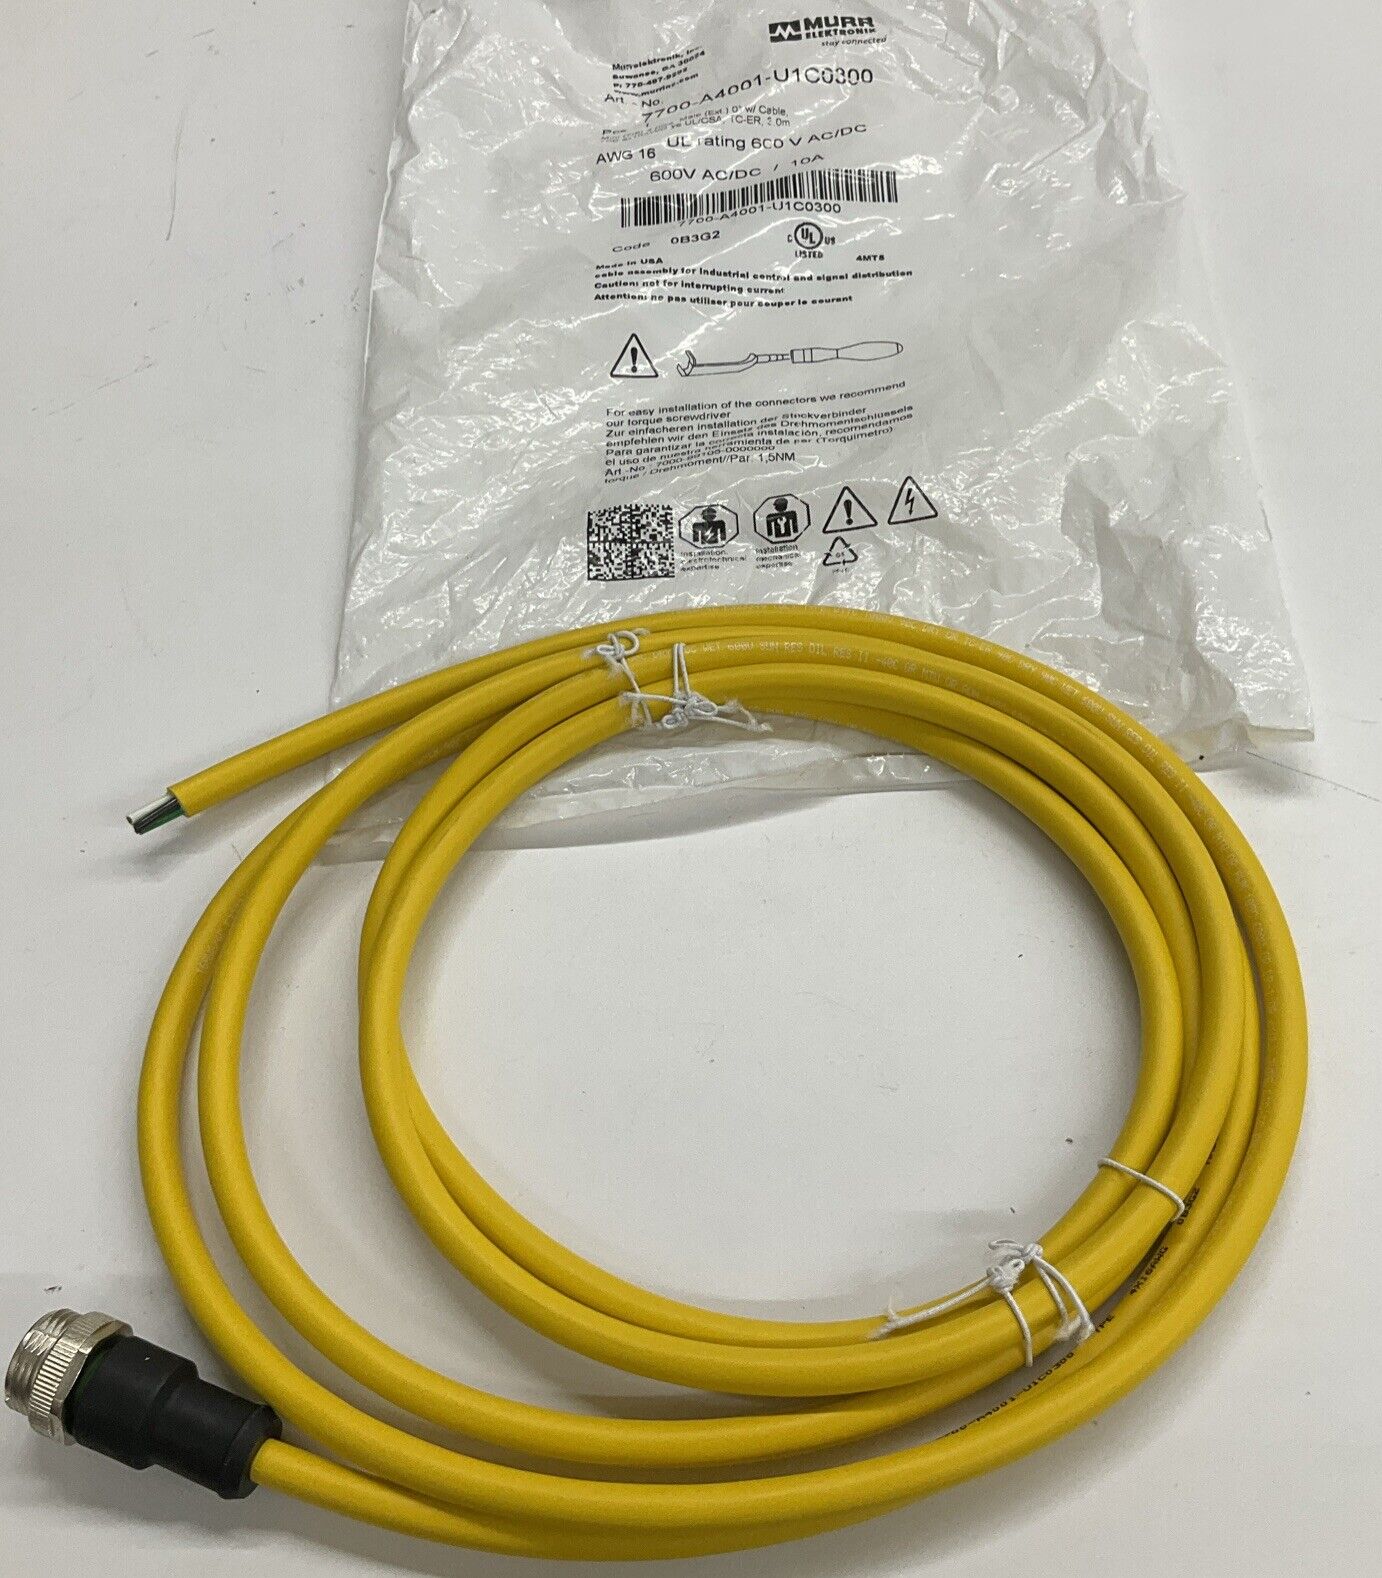 Murr 7700-A4001-U1C0300 7/8 Mini Male Single-End 4-Pole 3-Meter Cable (CBL110) - 0